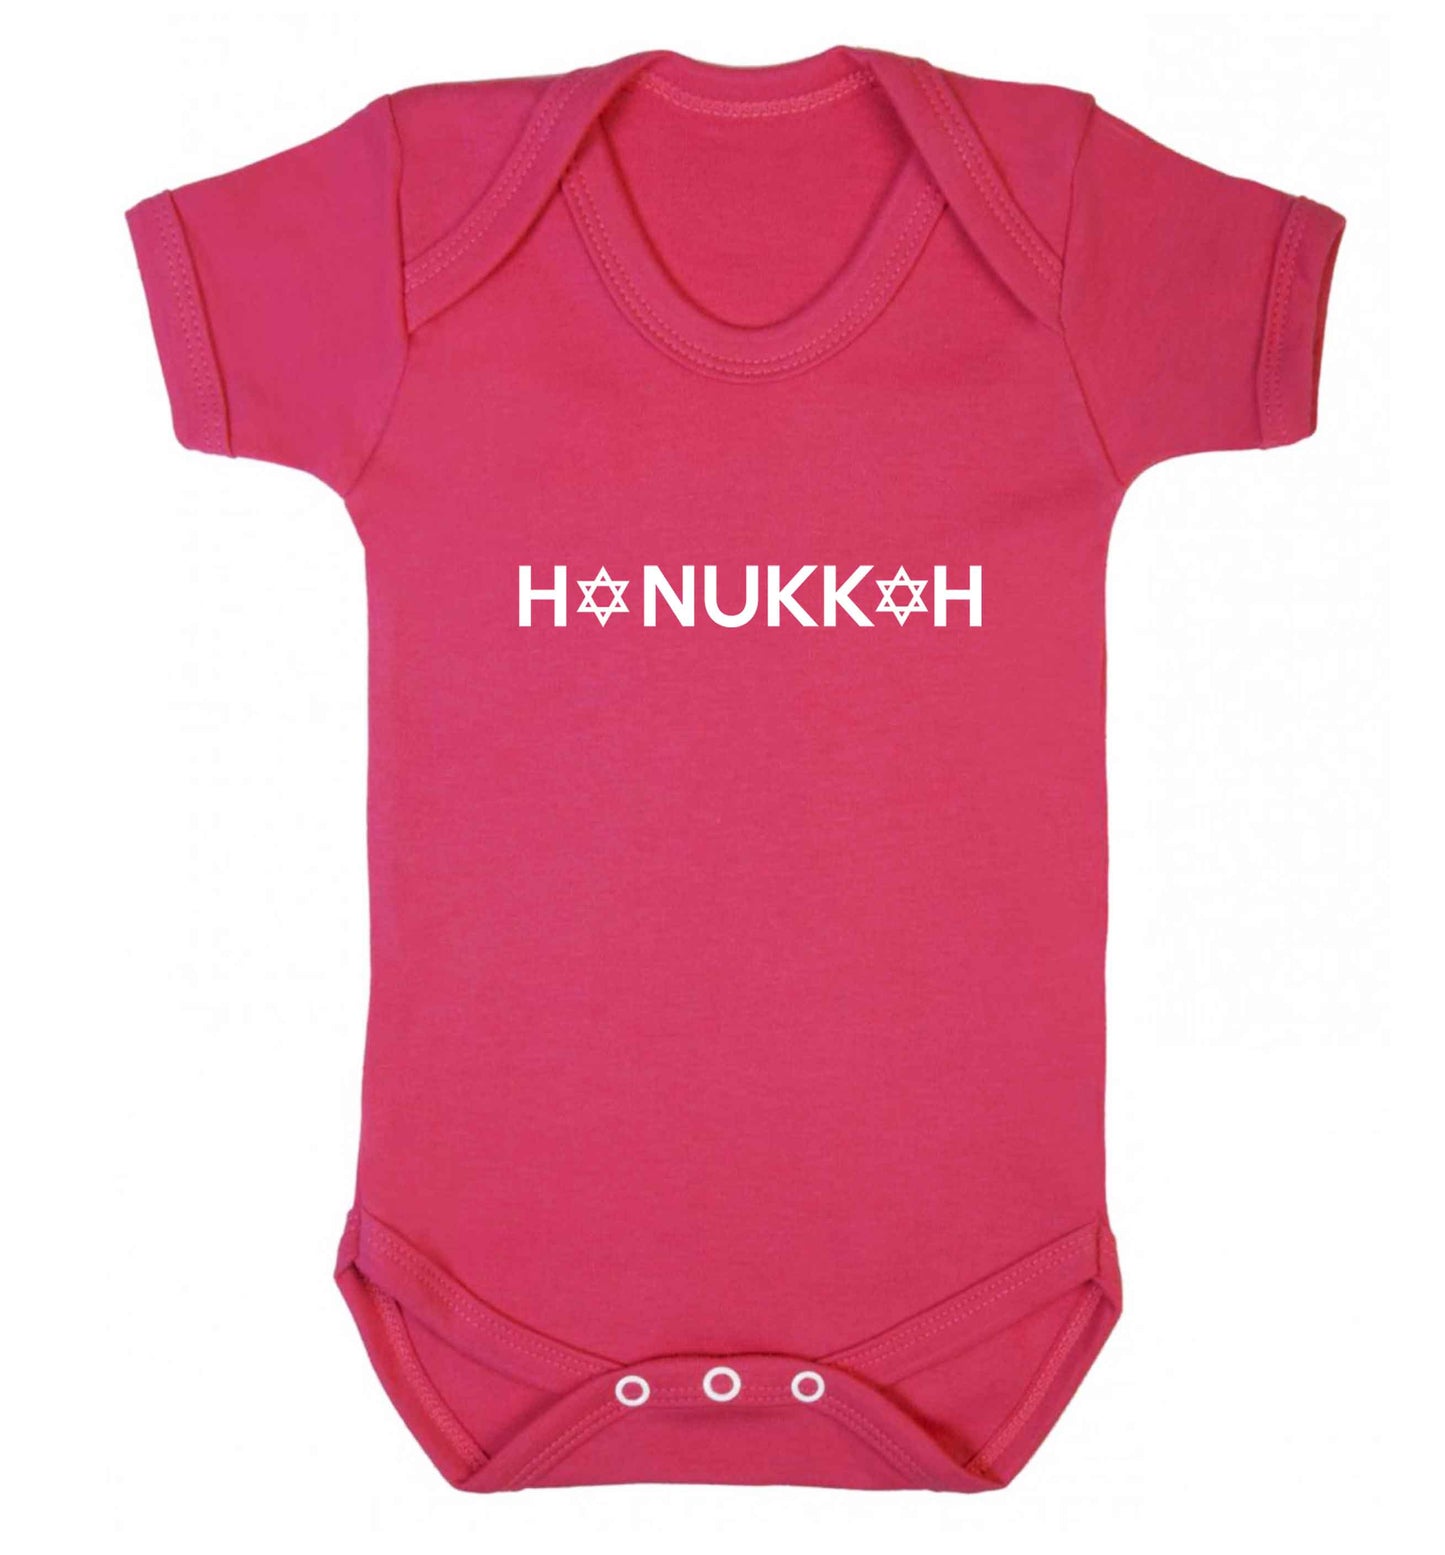 Hanukkah star of david baby vest dark pink 18-24 months